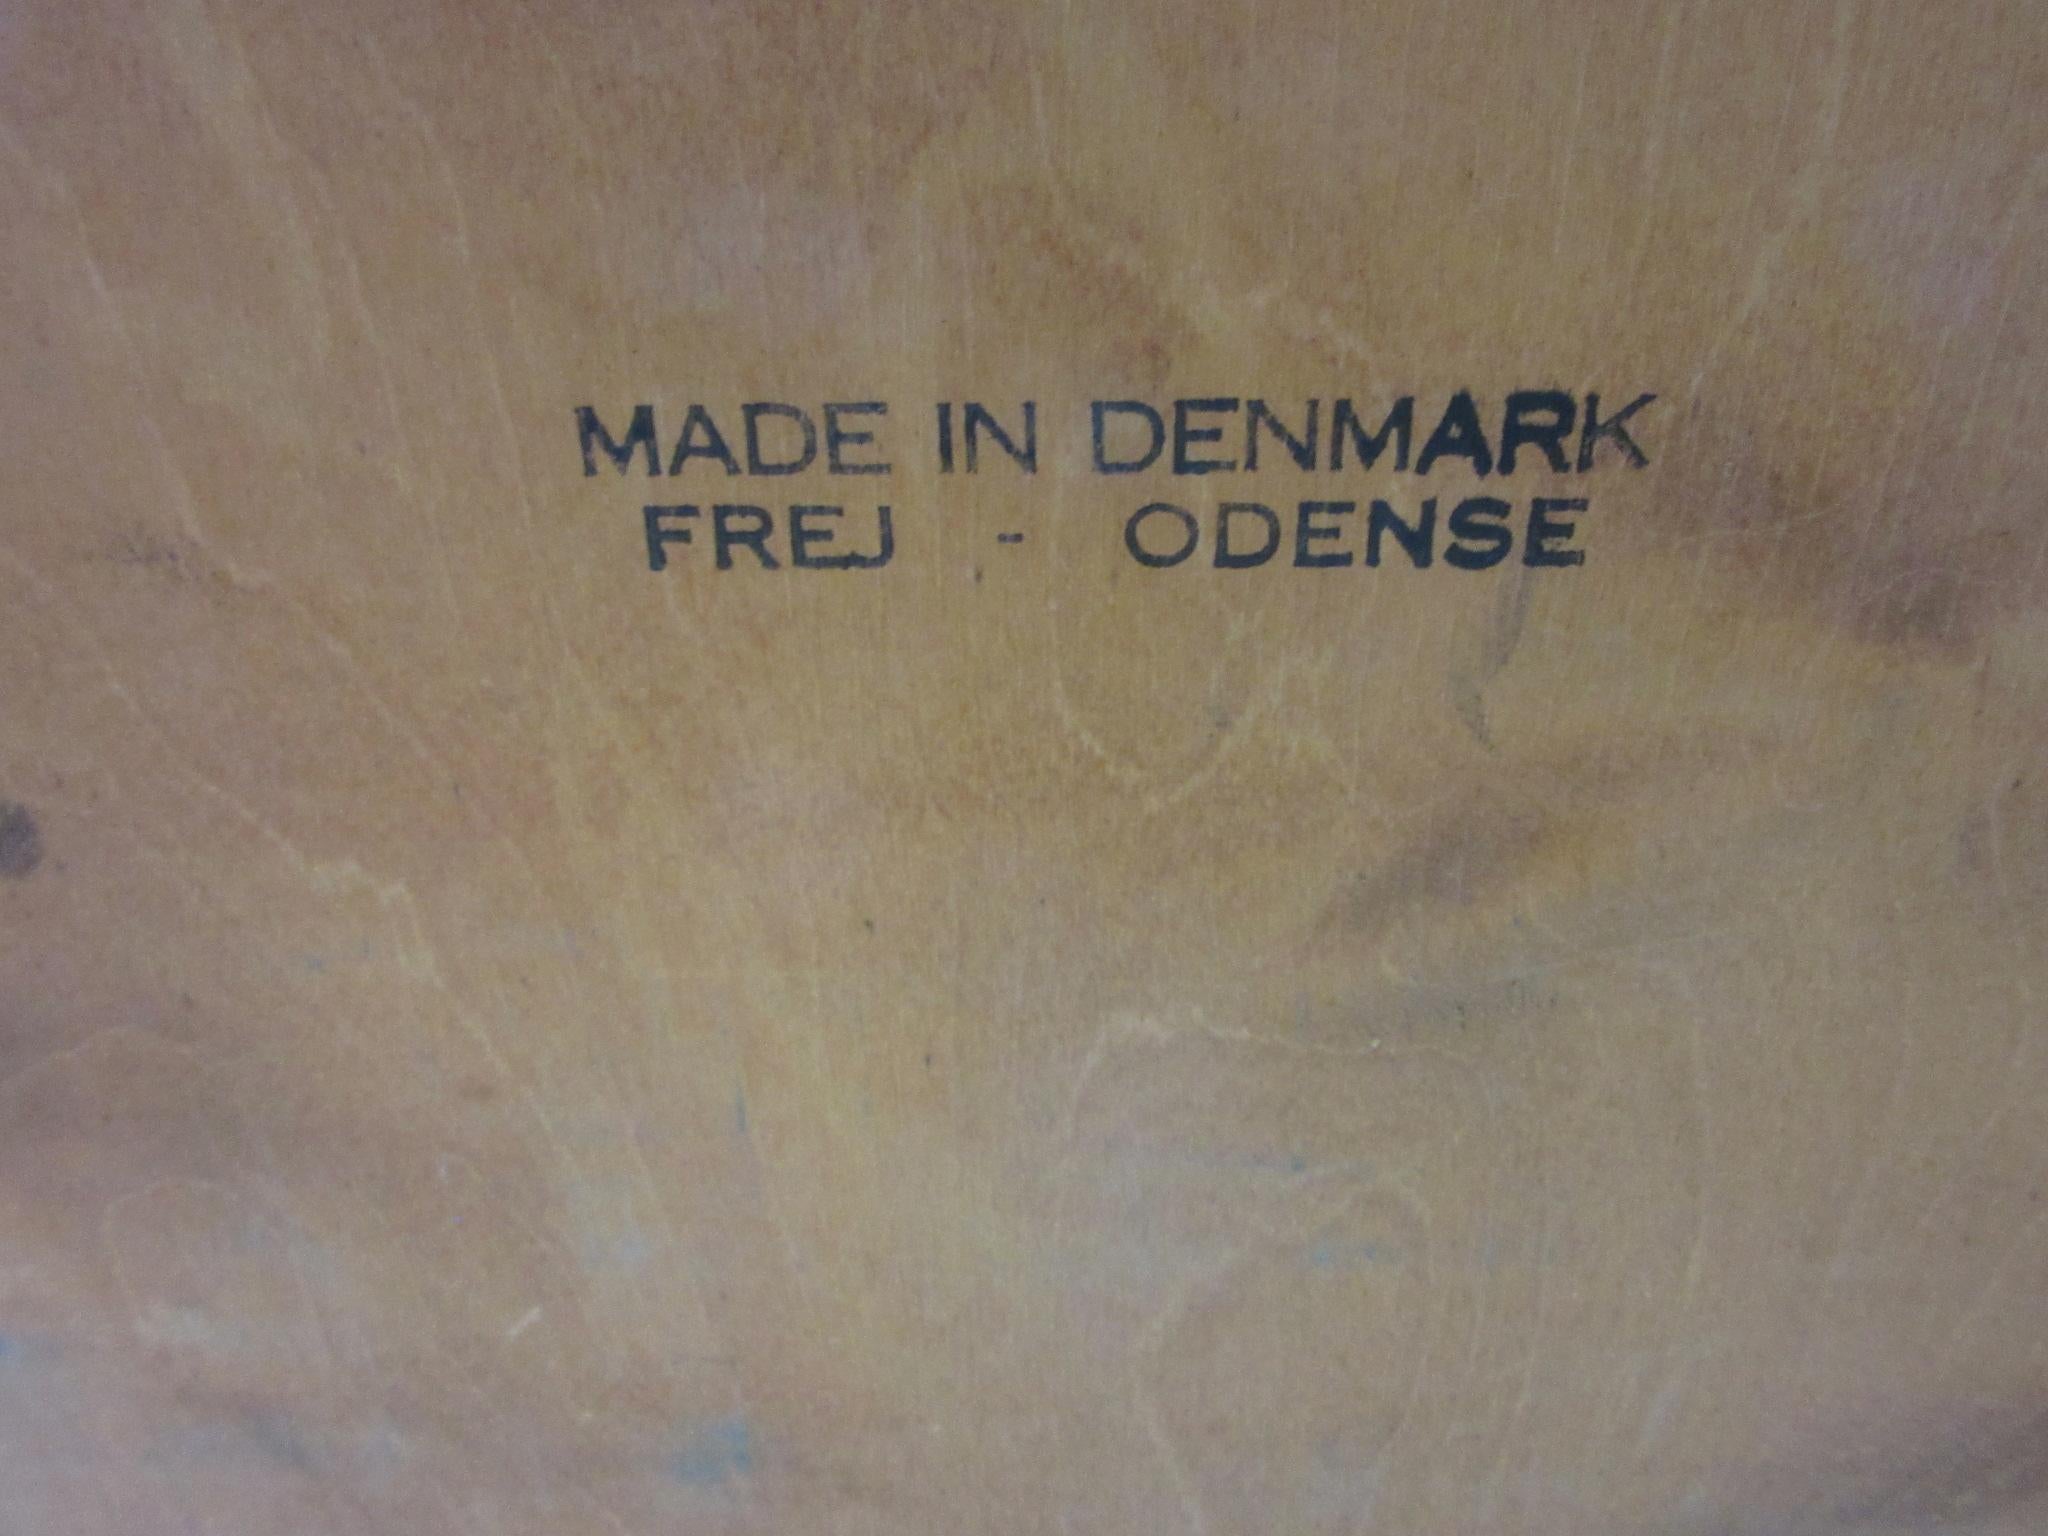 Frej, Odense Danish Jewelry, Watch Chest / Cabinet 4